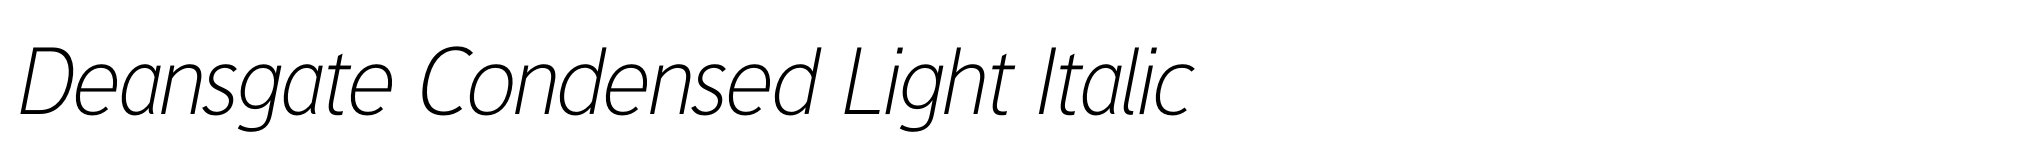 Deansgate Condensed Light Italic image